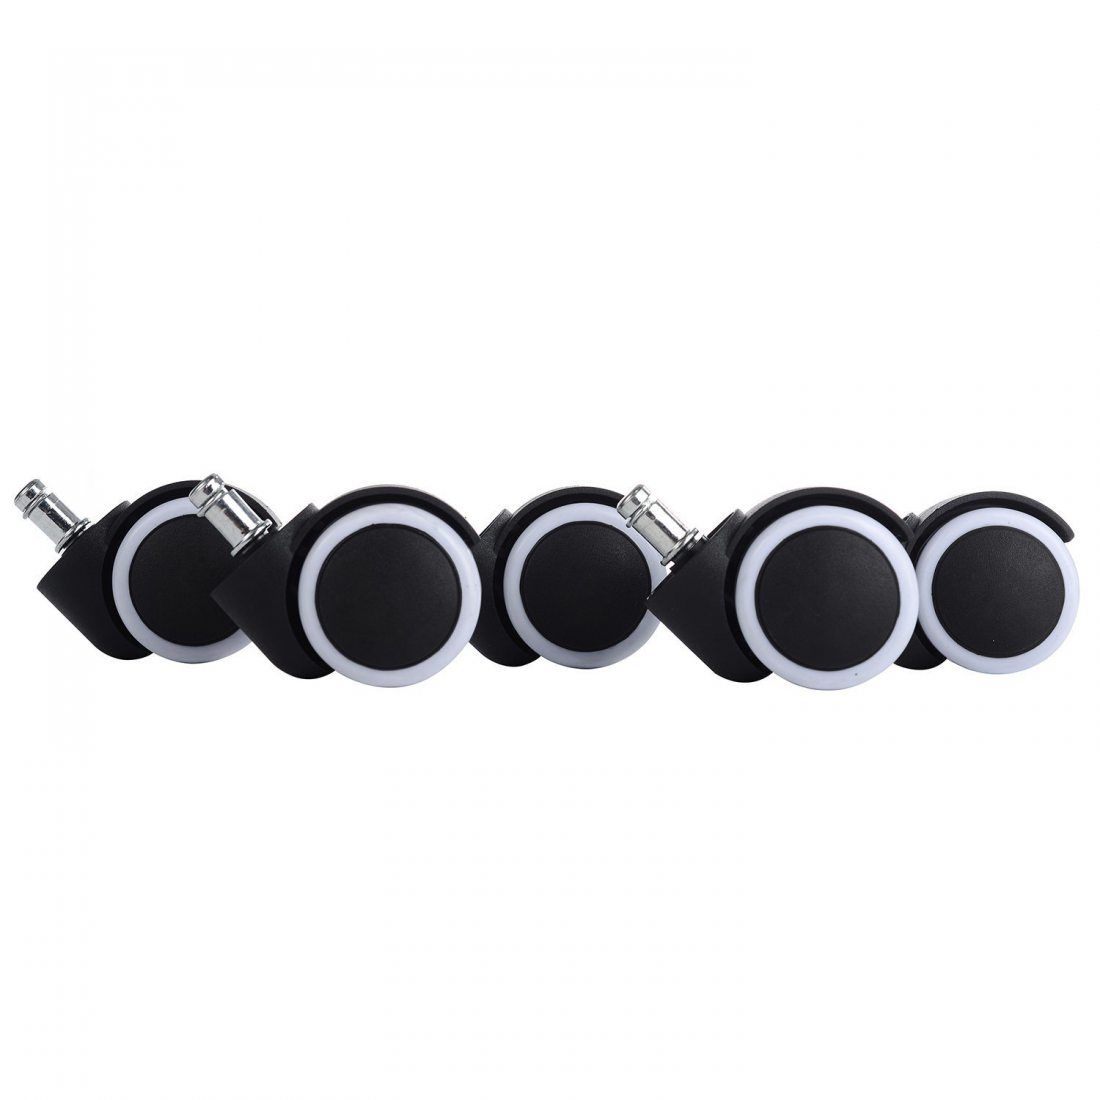 LIHAO 5pcs roulettes Universelles et Résistantes à l’Abrasion pour Sols Durs 10/50 mm roulettes